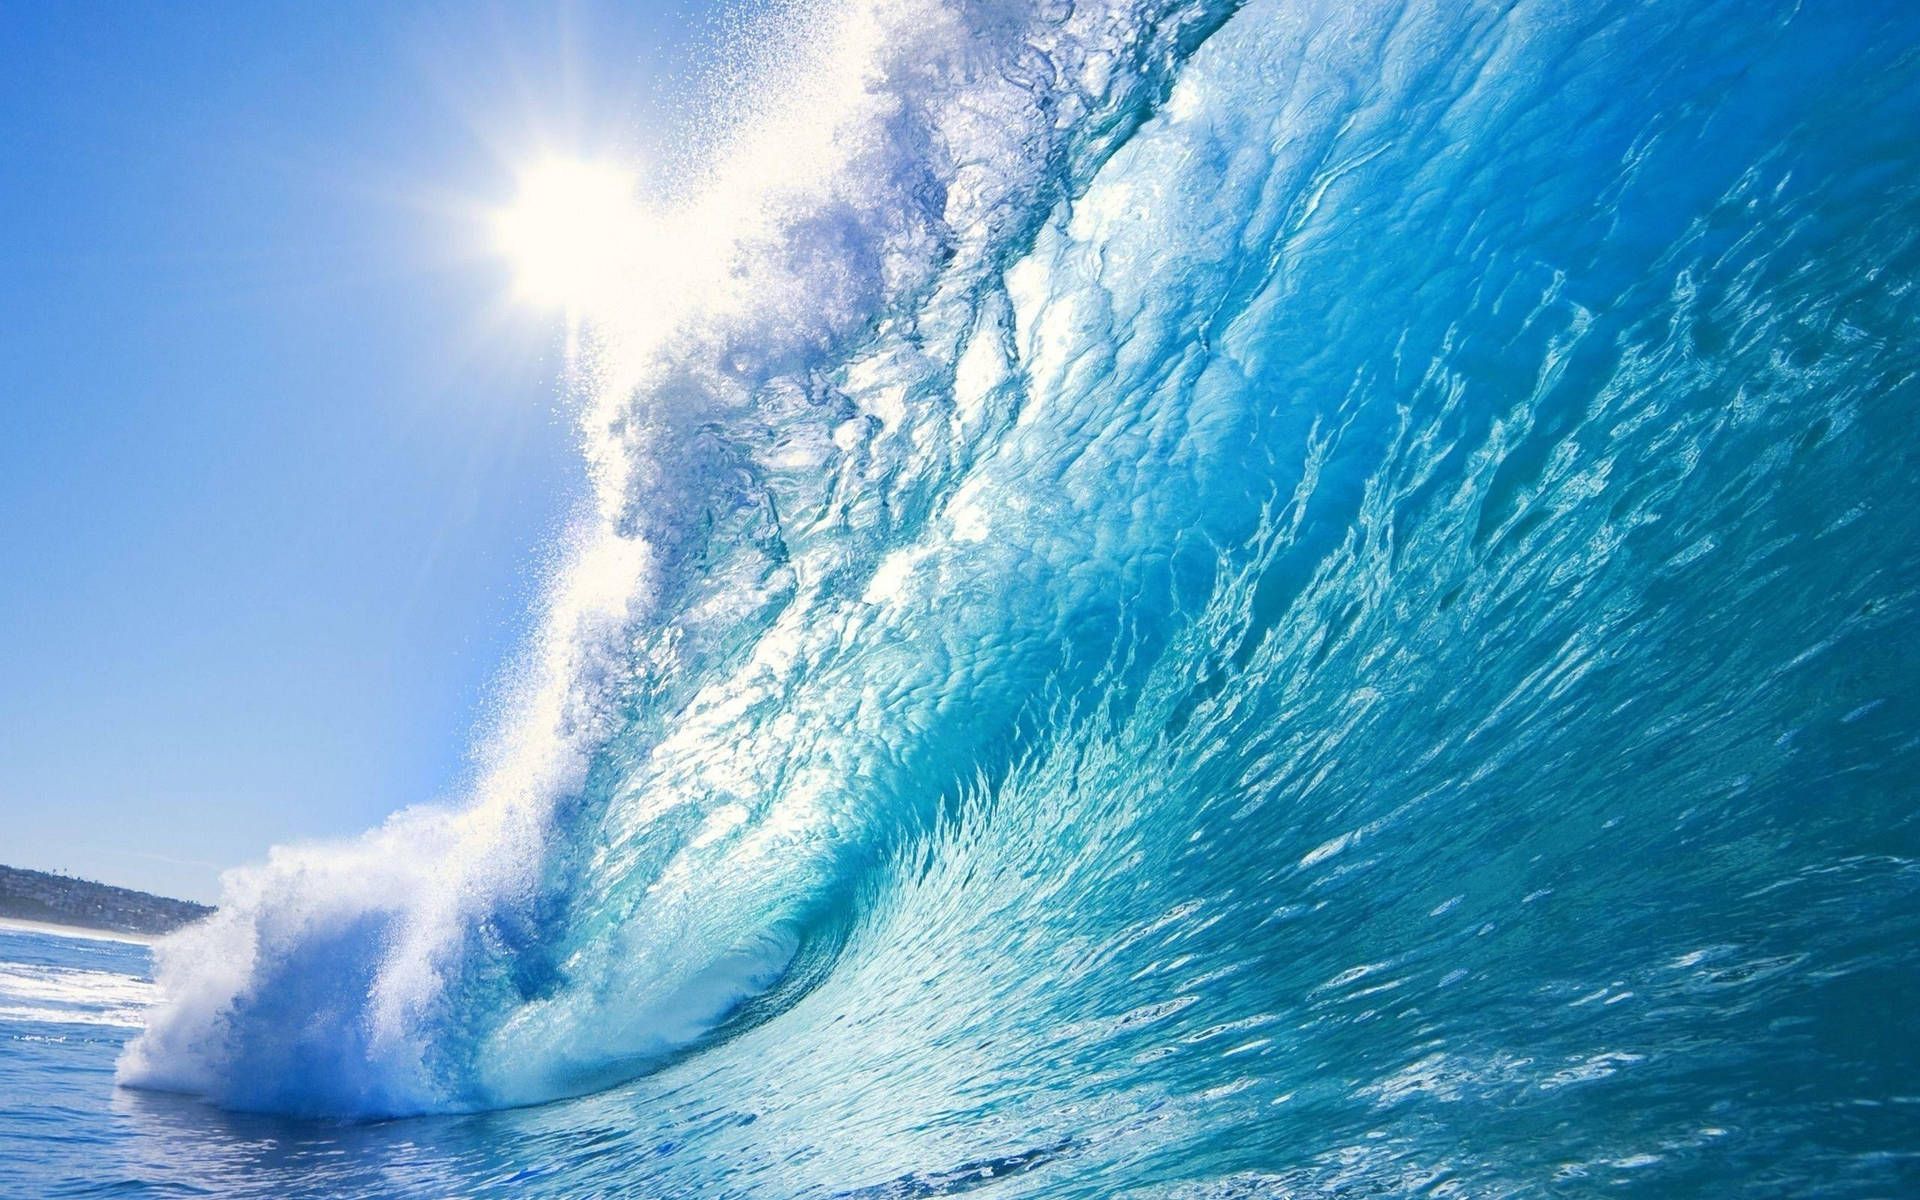 A large wave is breaking in the ocean - Ocean